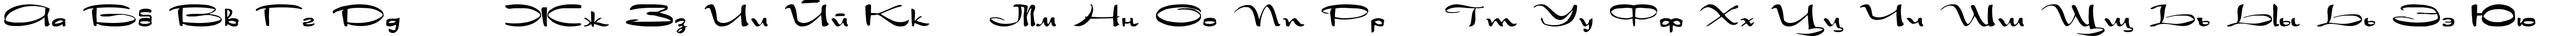 Пример написания русского алфавита шрифтом Drakkar